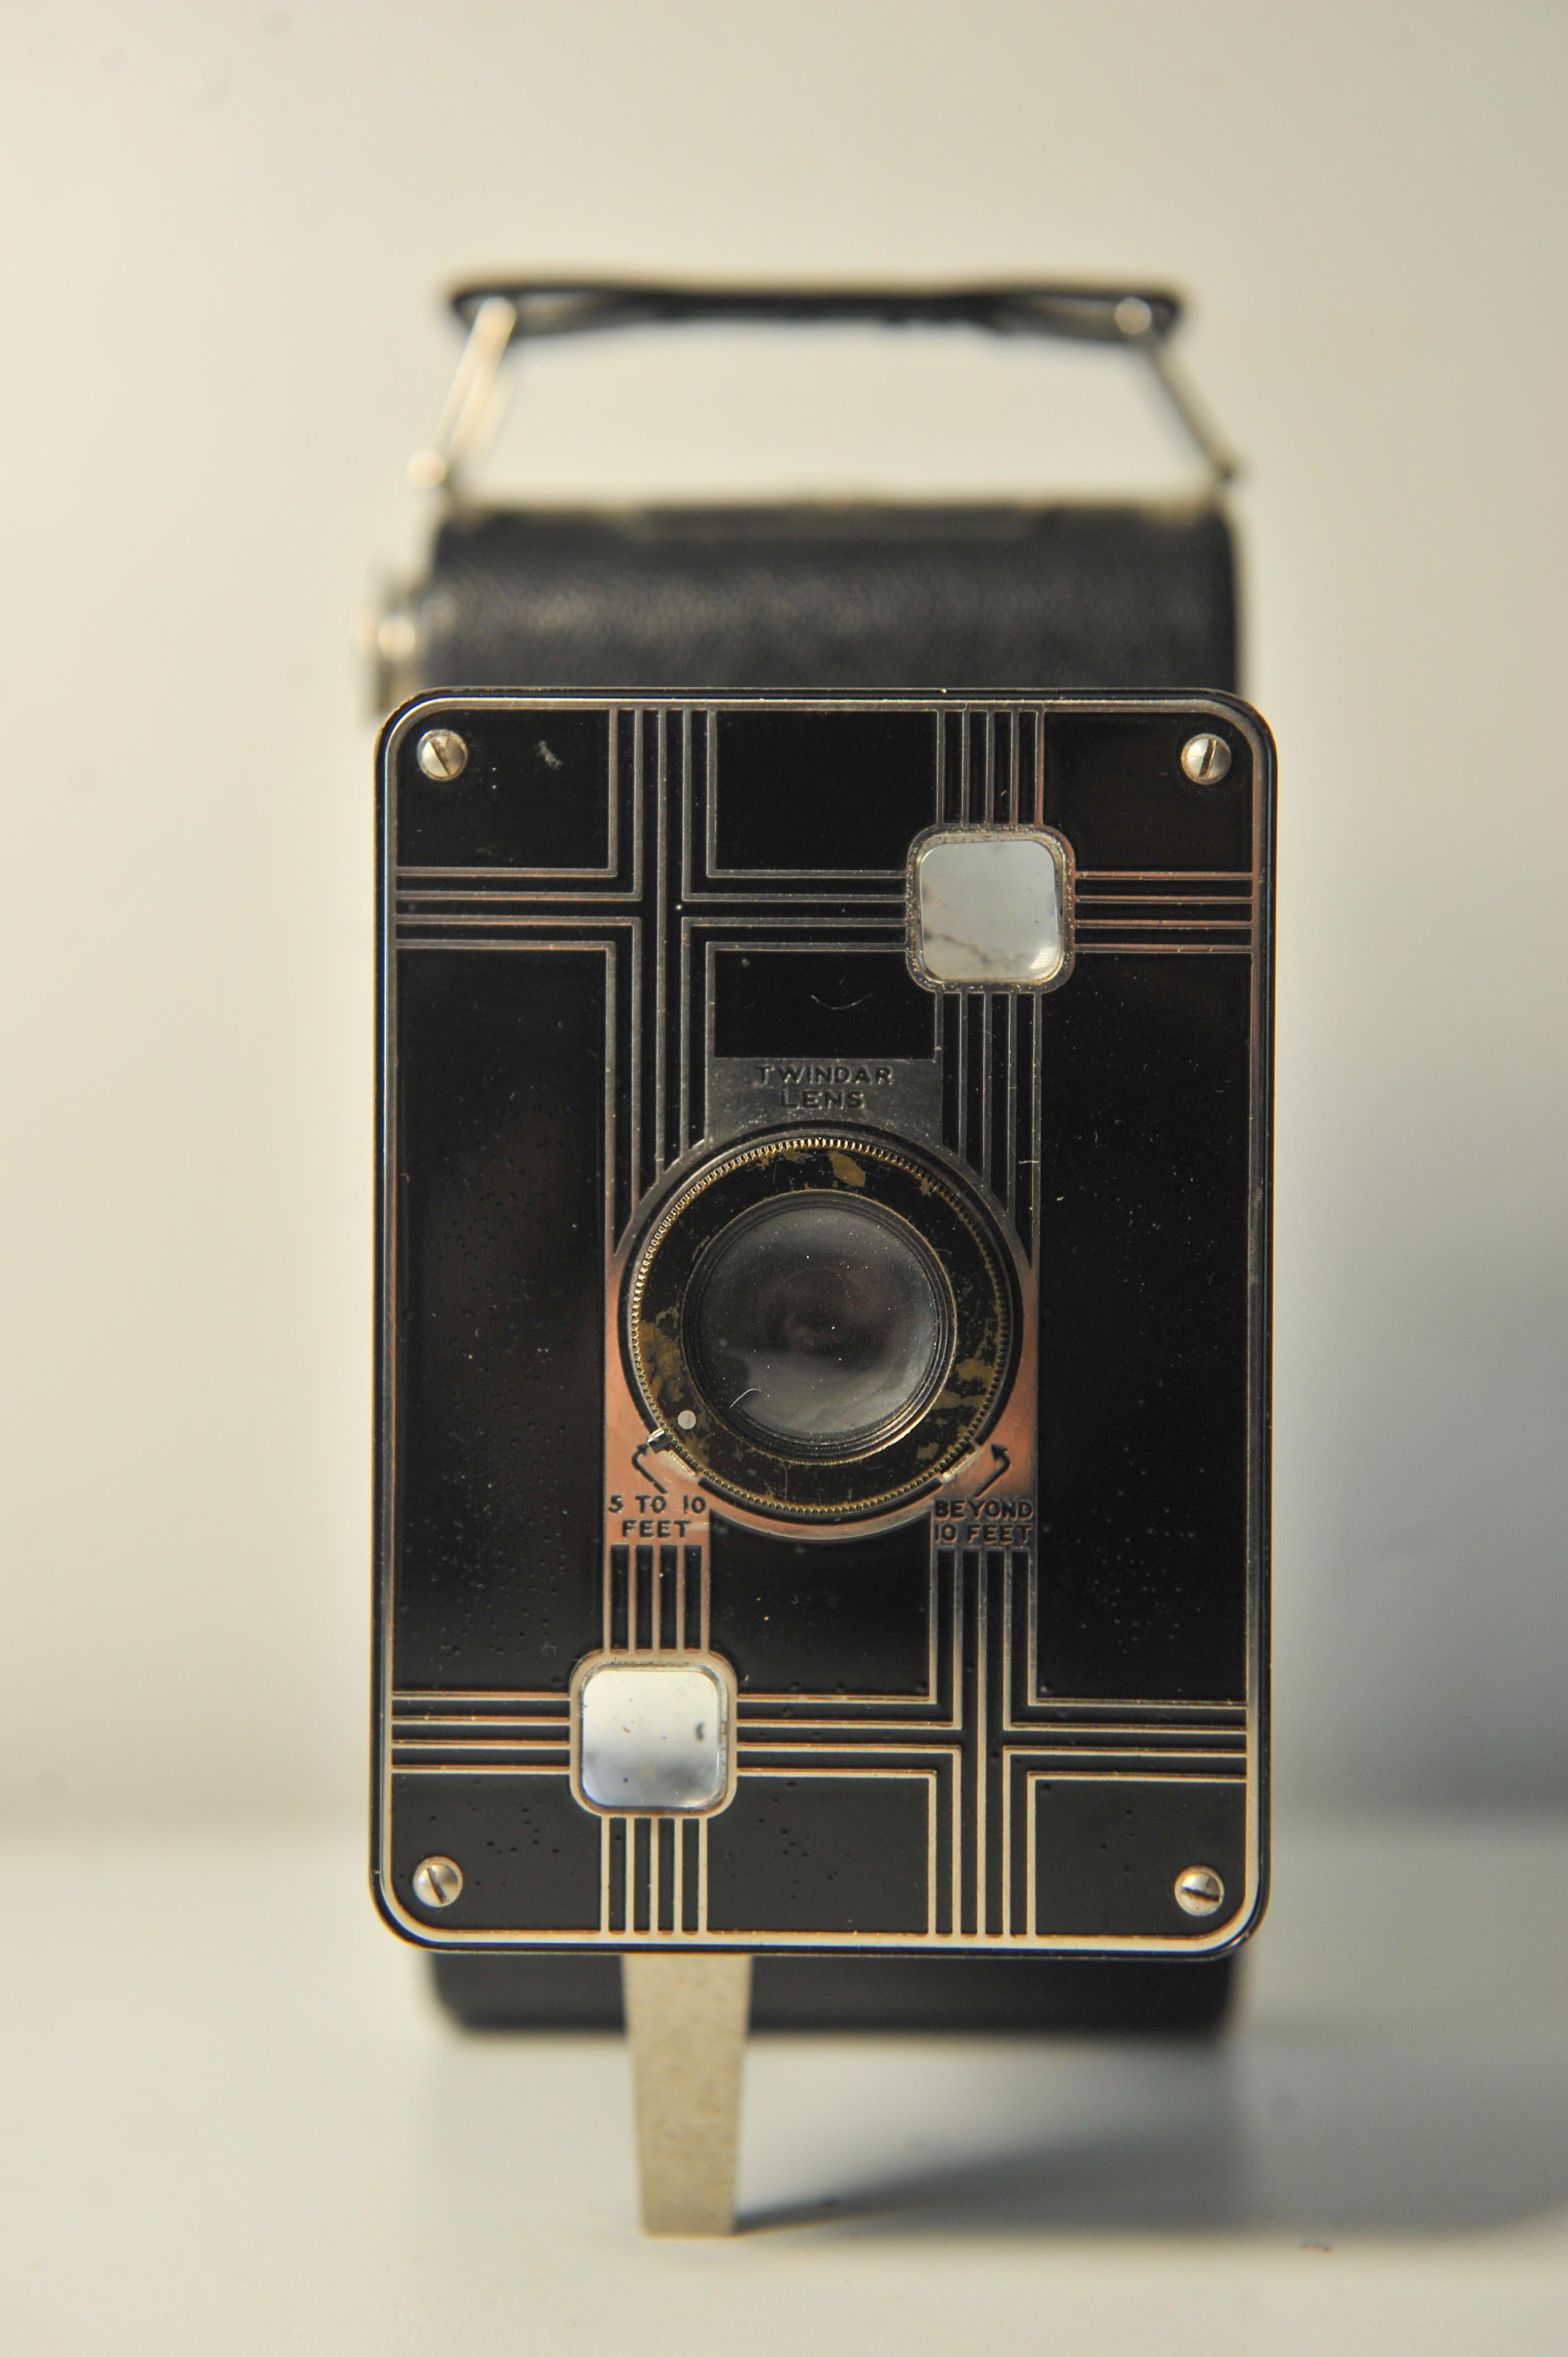 Appareil photo Art Déco Eastman Kodak Jiffy Kodak Six-20 Folding Rollfilm Camera 
Stylisé par Walter Dorwin Teague Fabriqué à Rochester NY, USA entre 1933 et 1937
Accepte 620 rouleaux de film 

Classification	:	Format moyen
Type de